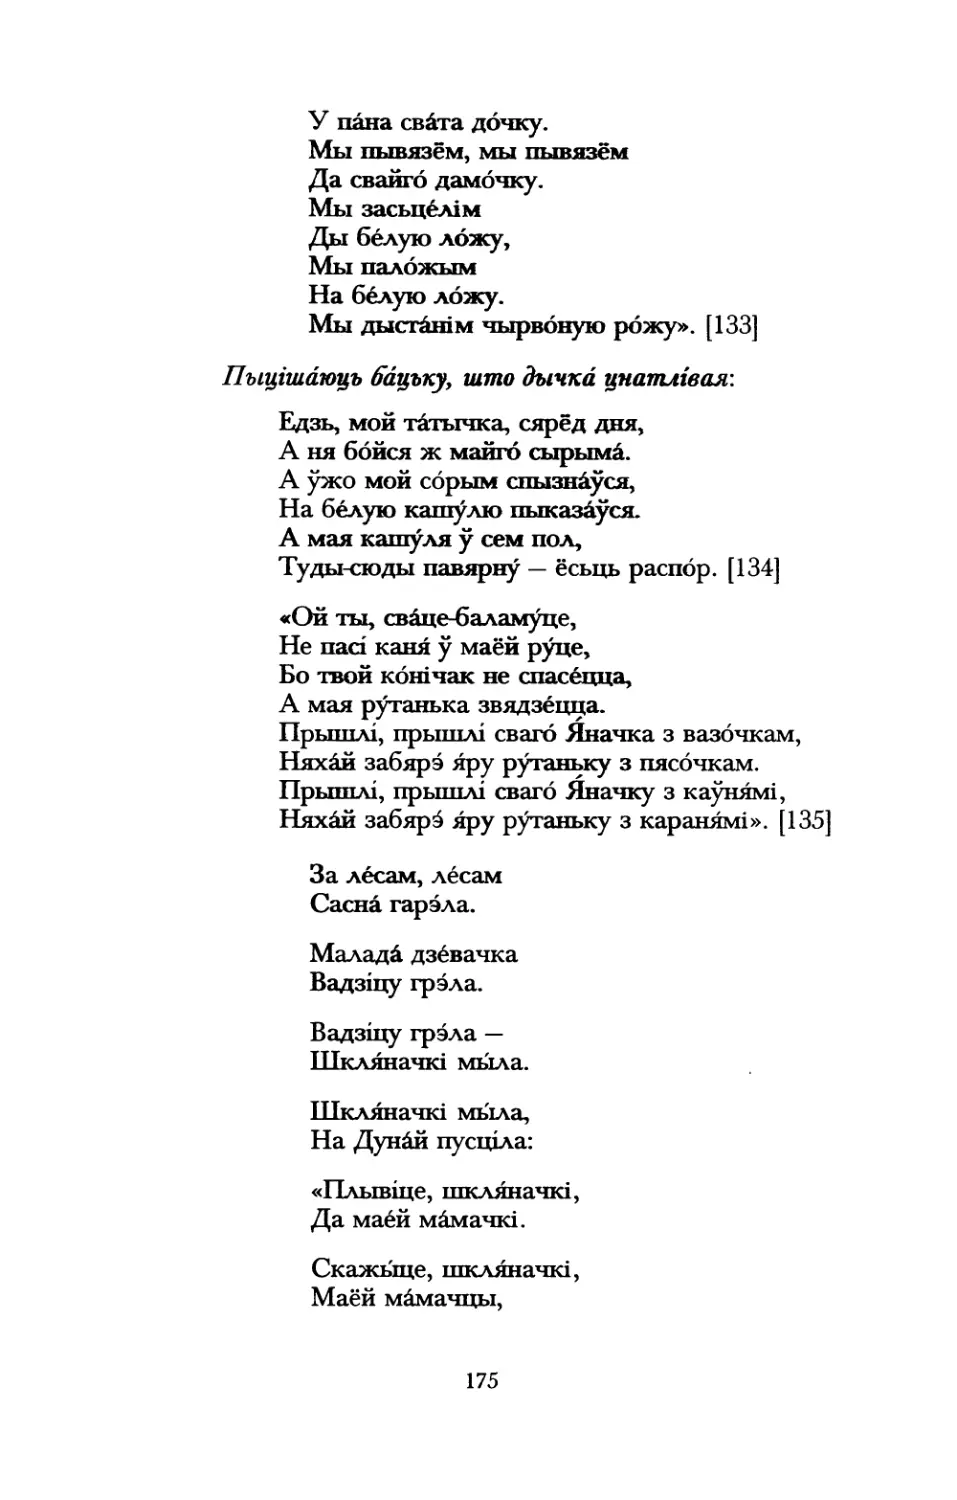 Могилевские свадебные песни из записей А.С. Дембовецкого